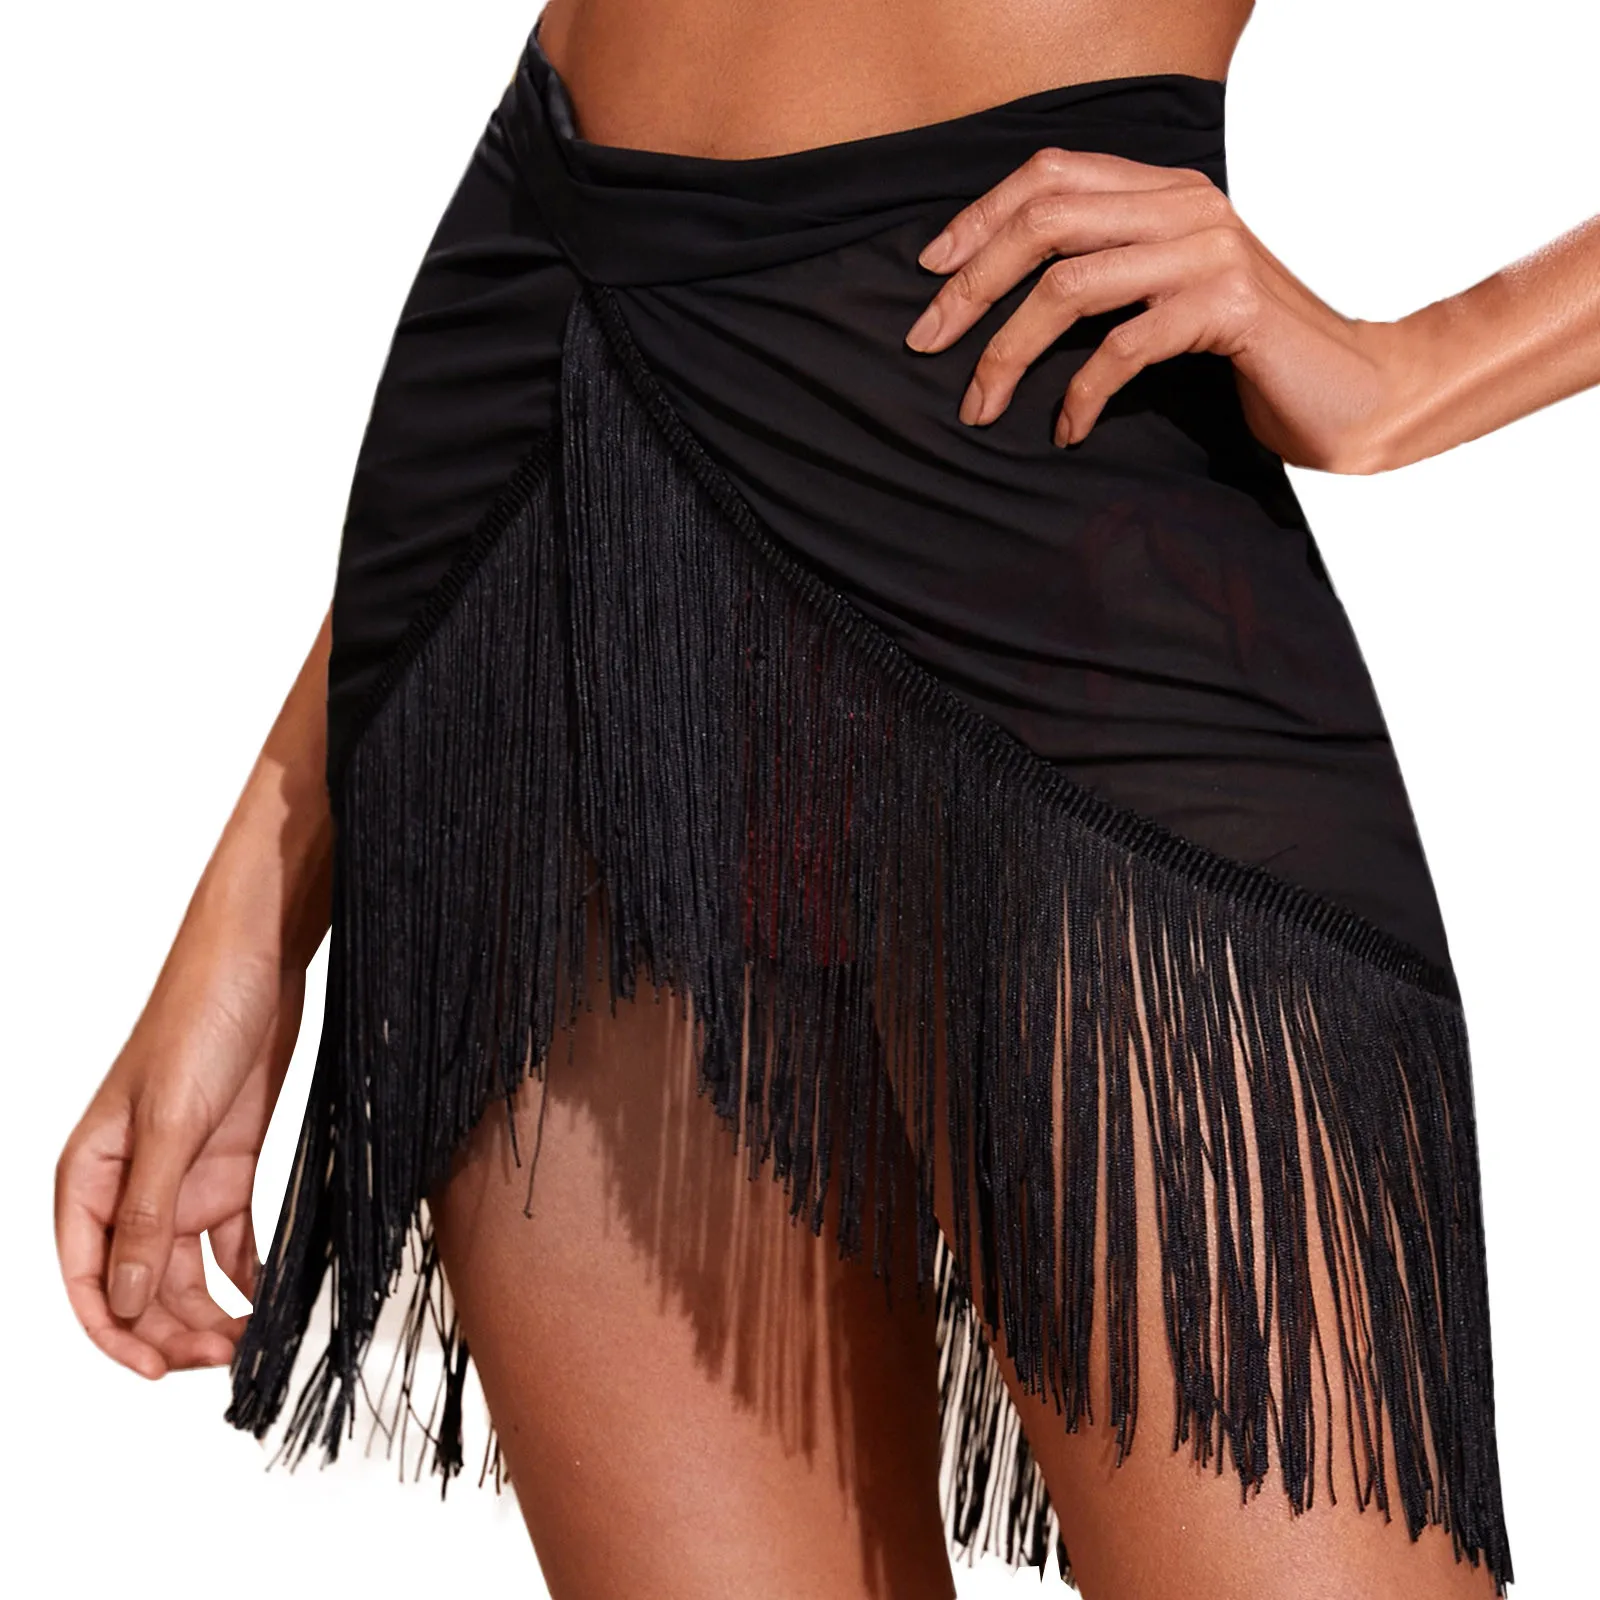 Women tassel Trim Sheer Beach Skirt Cover Up Skirt Beach Wrap Bikini Shiny Wraps Cover Ups For Swimwear Mesh Cover Up Skirt 5XL